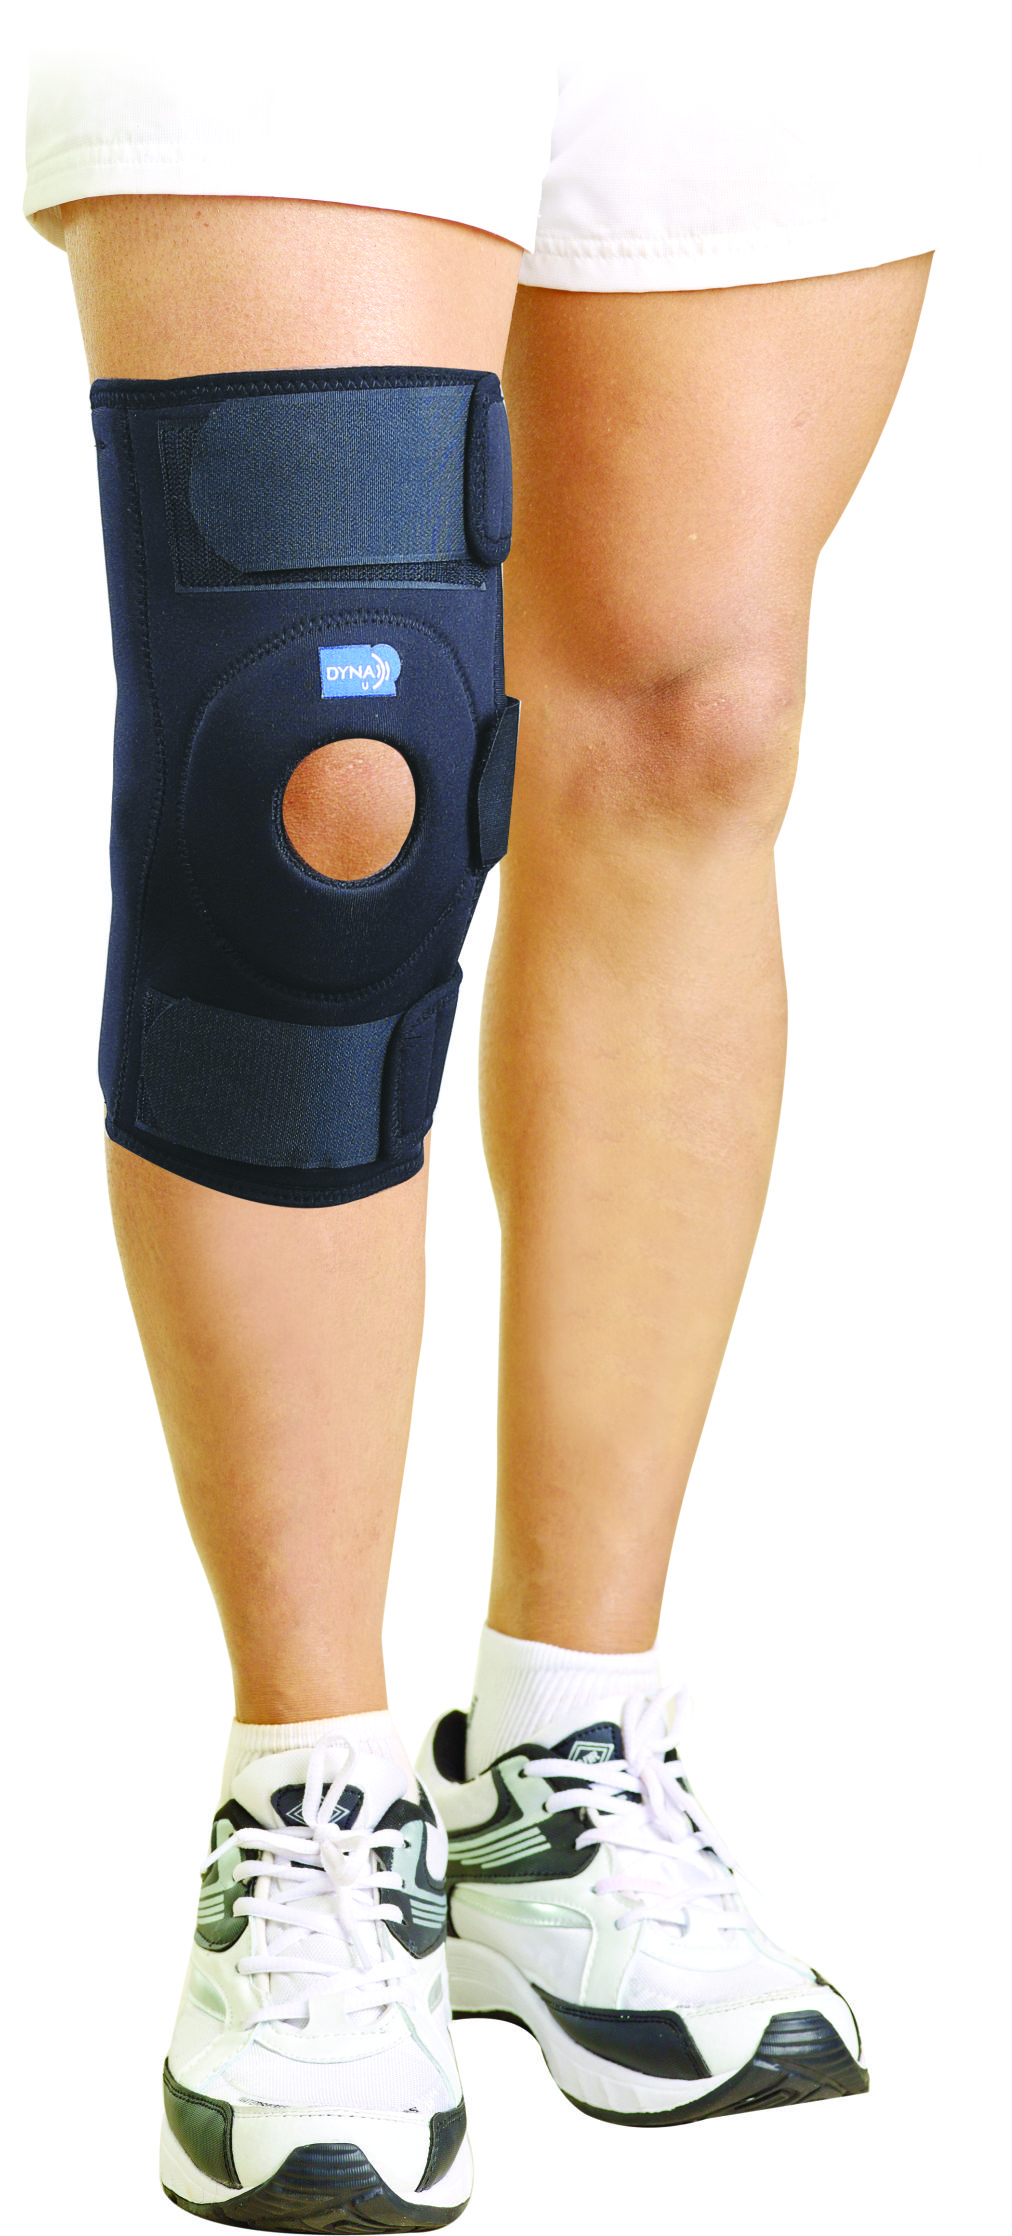 Dyna Wrap Around Hinged Knee Brace - Dynamic Techno Medicals